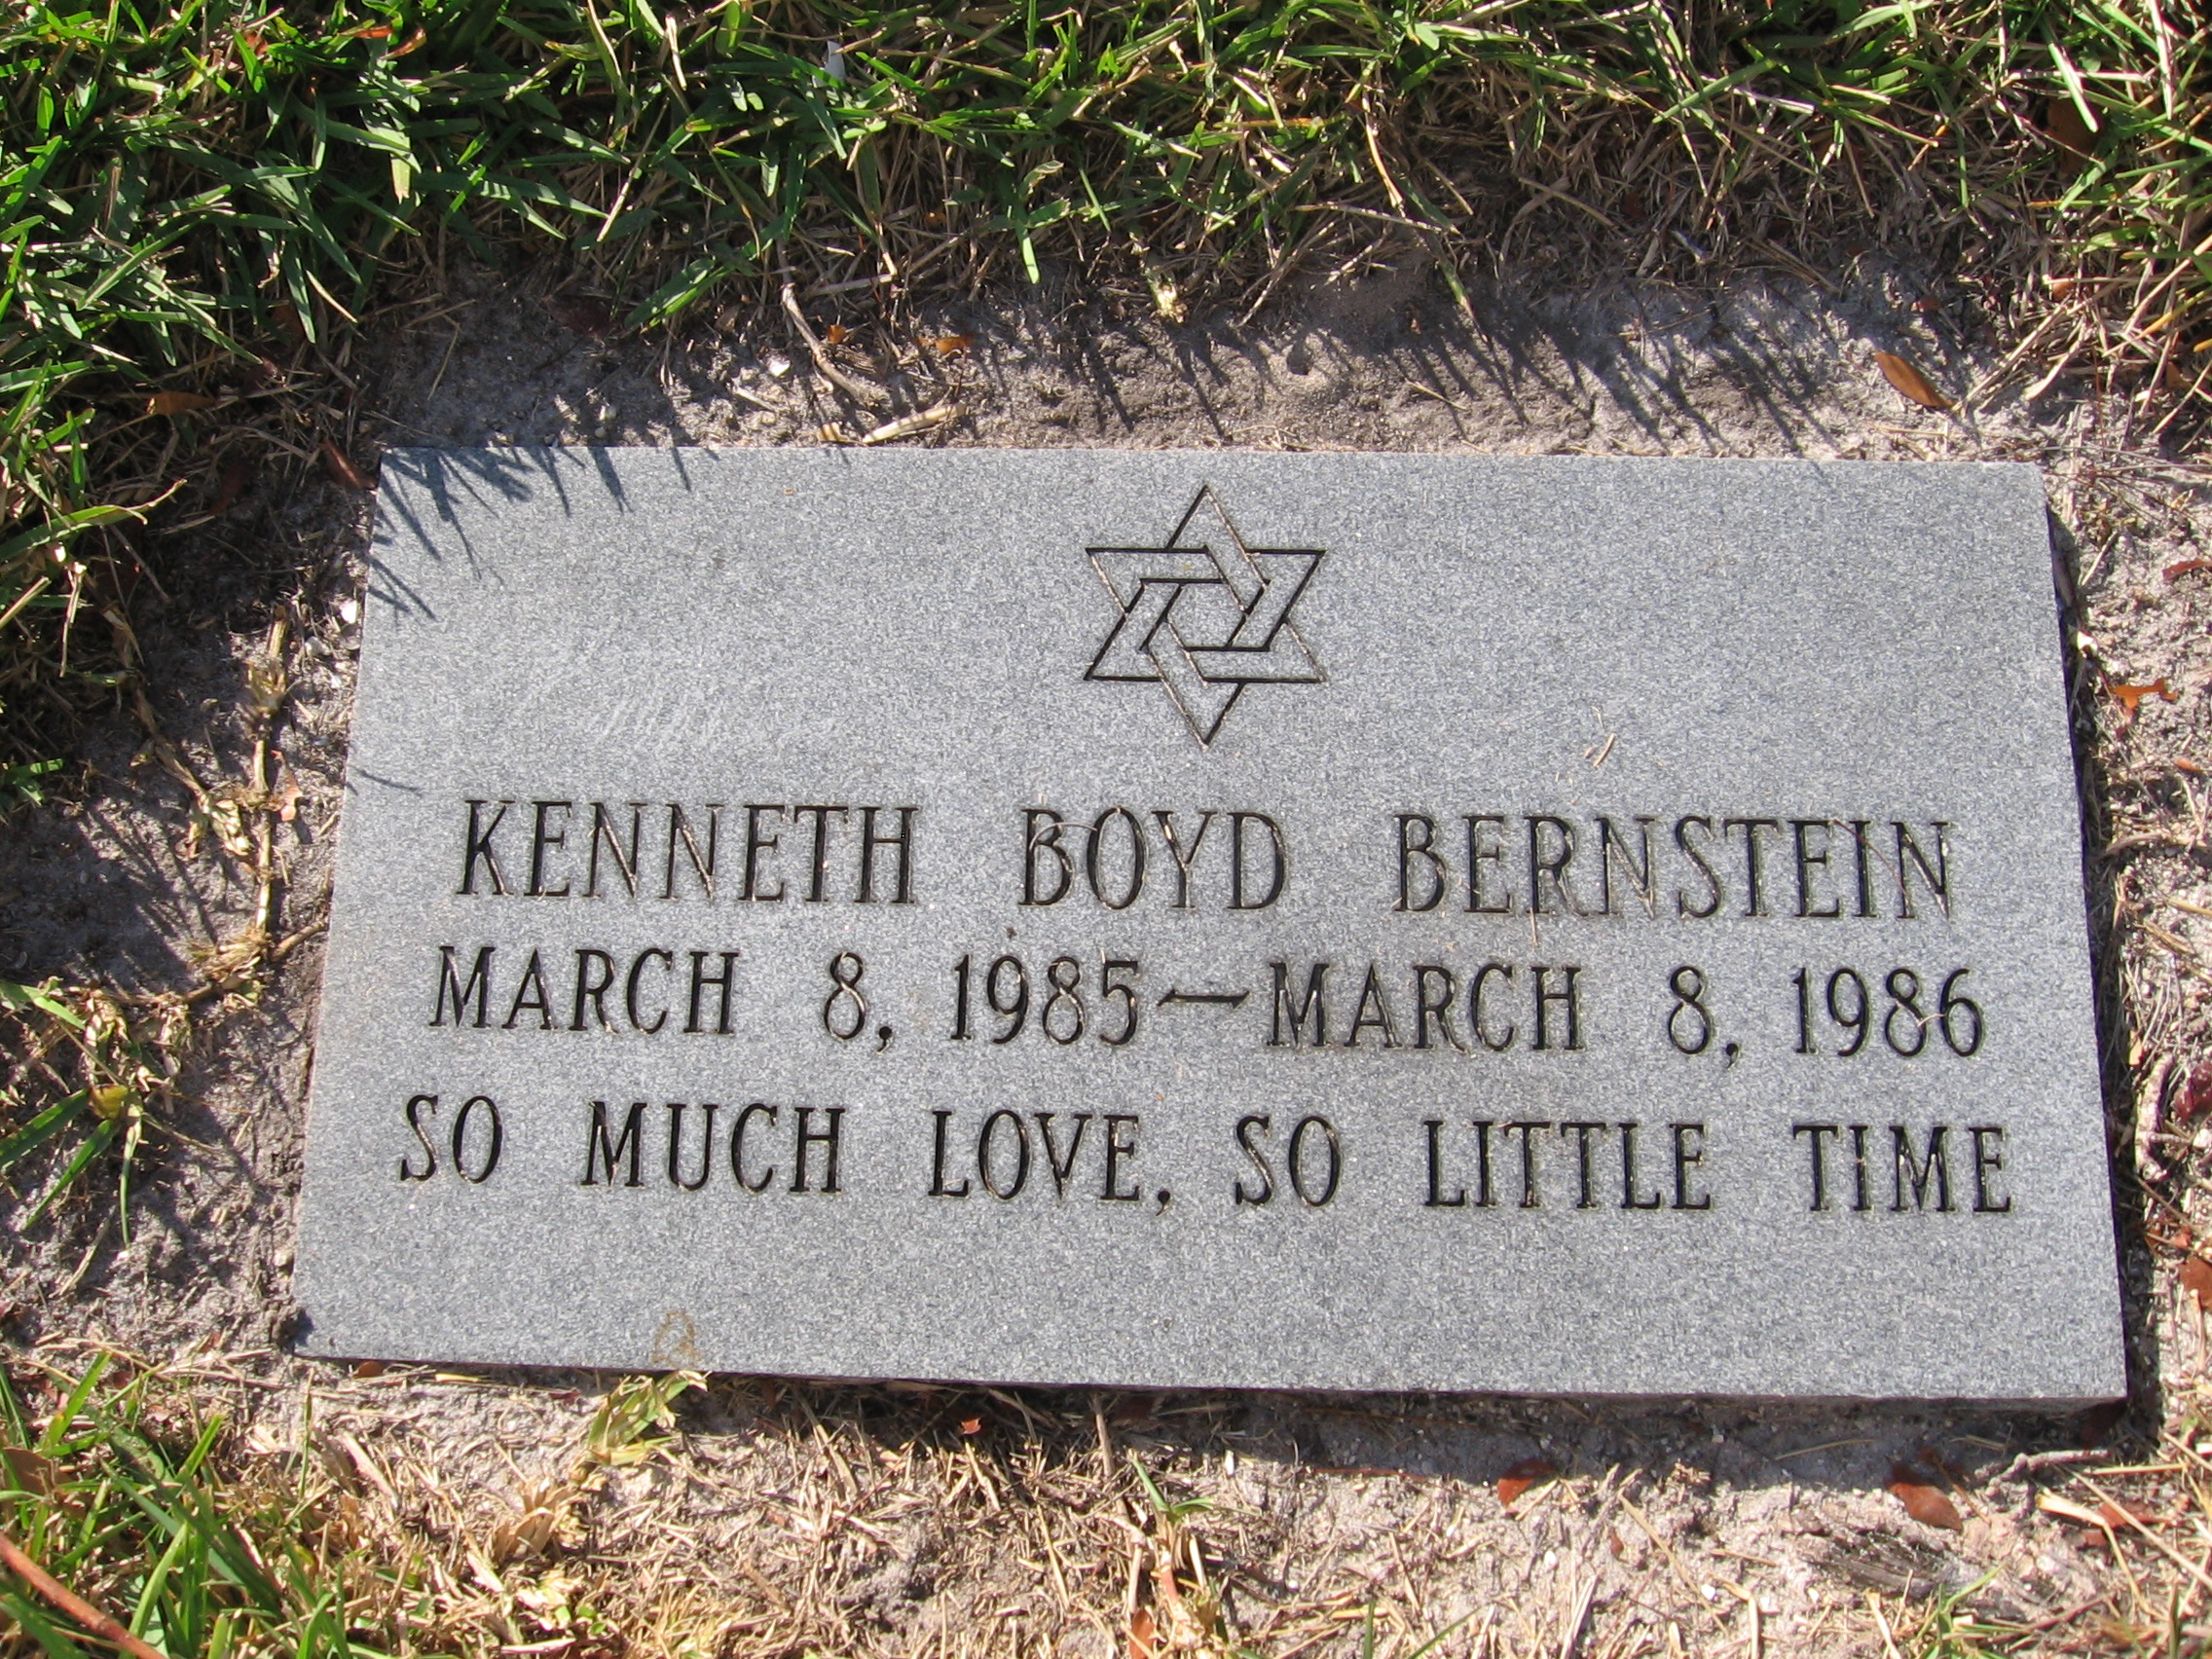 Kenneth Boyd Bernstein